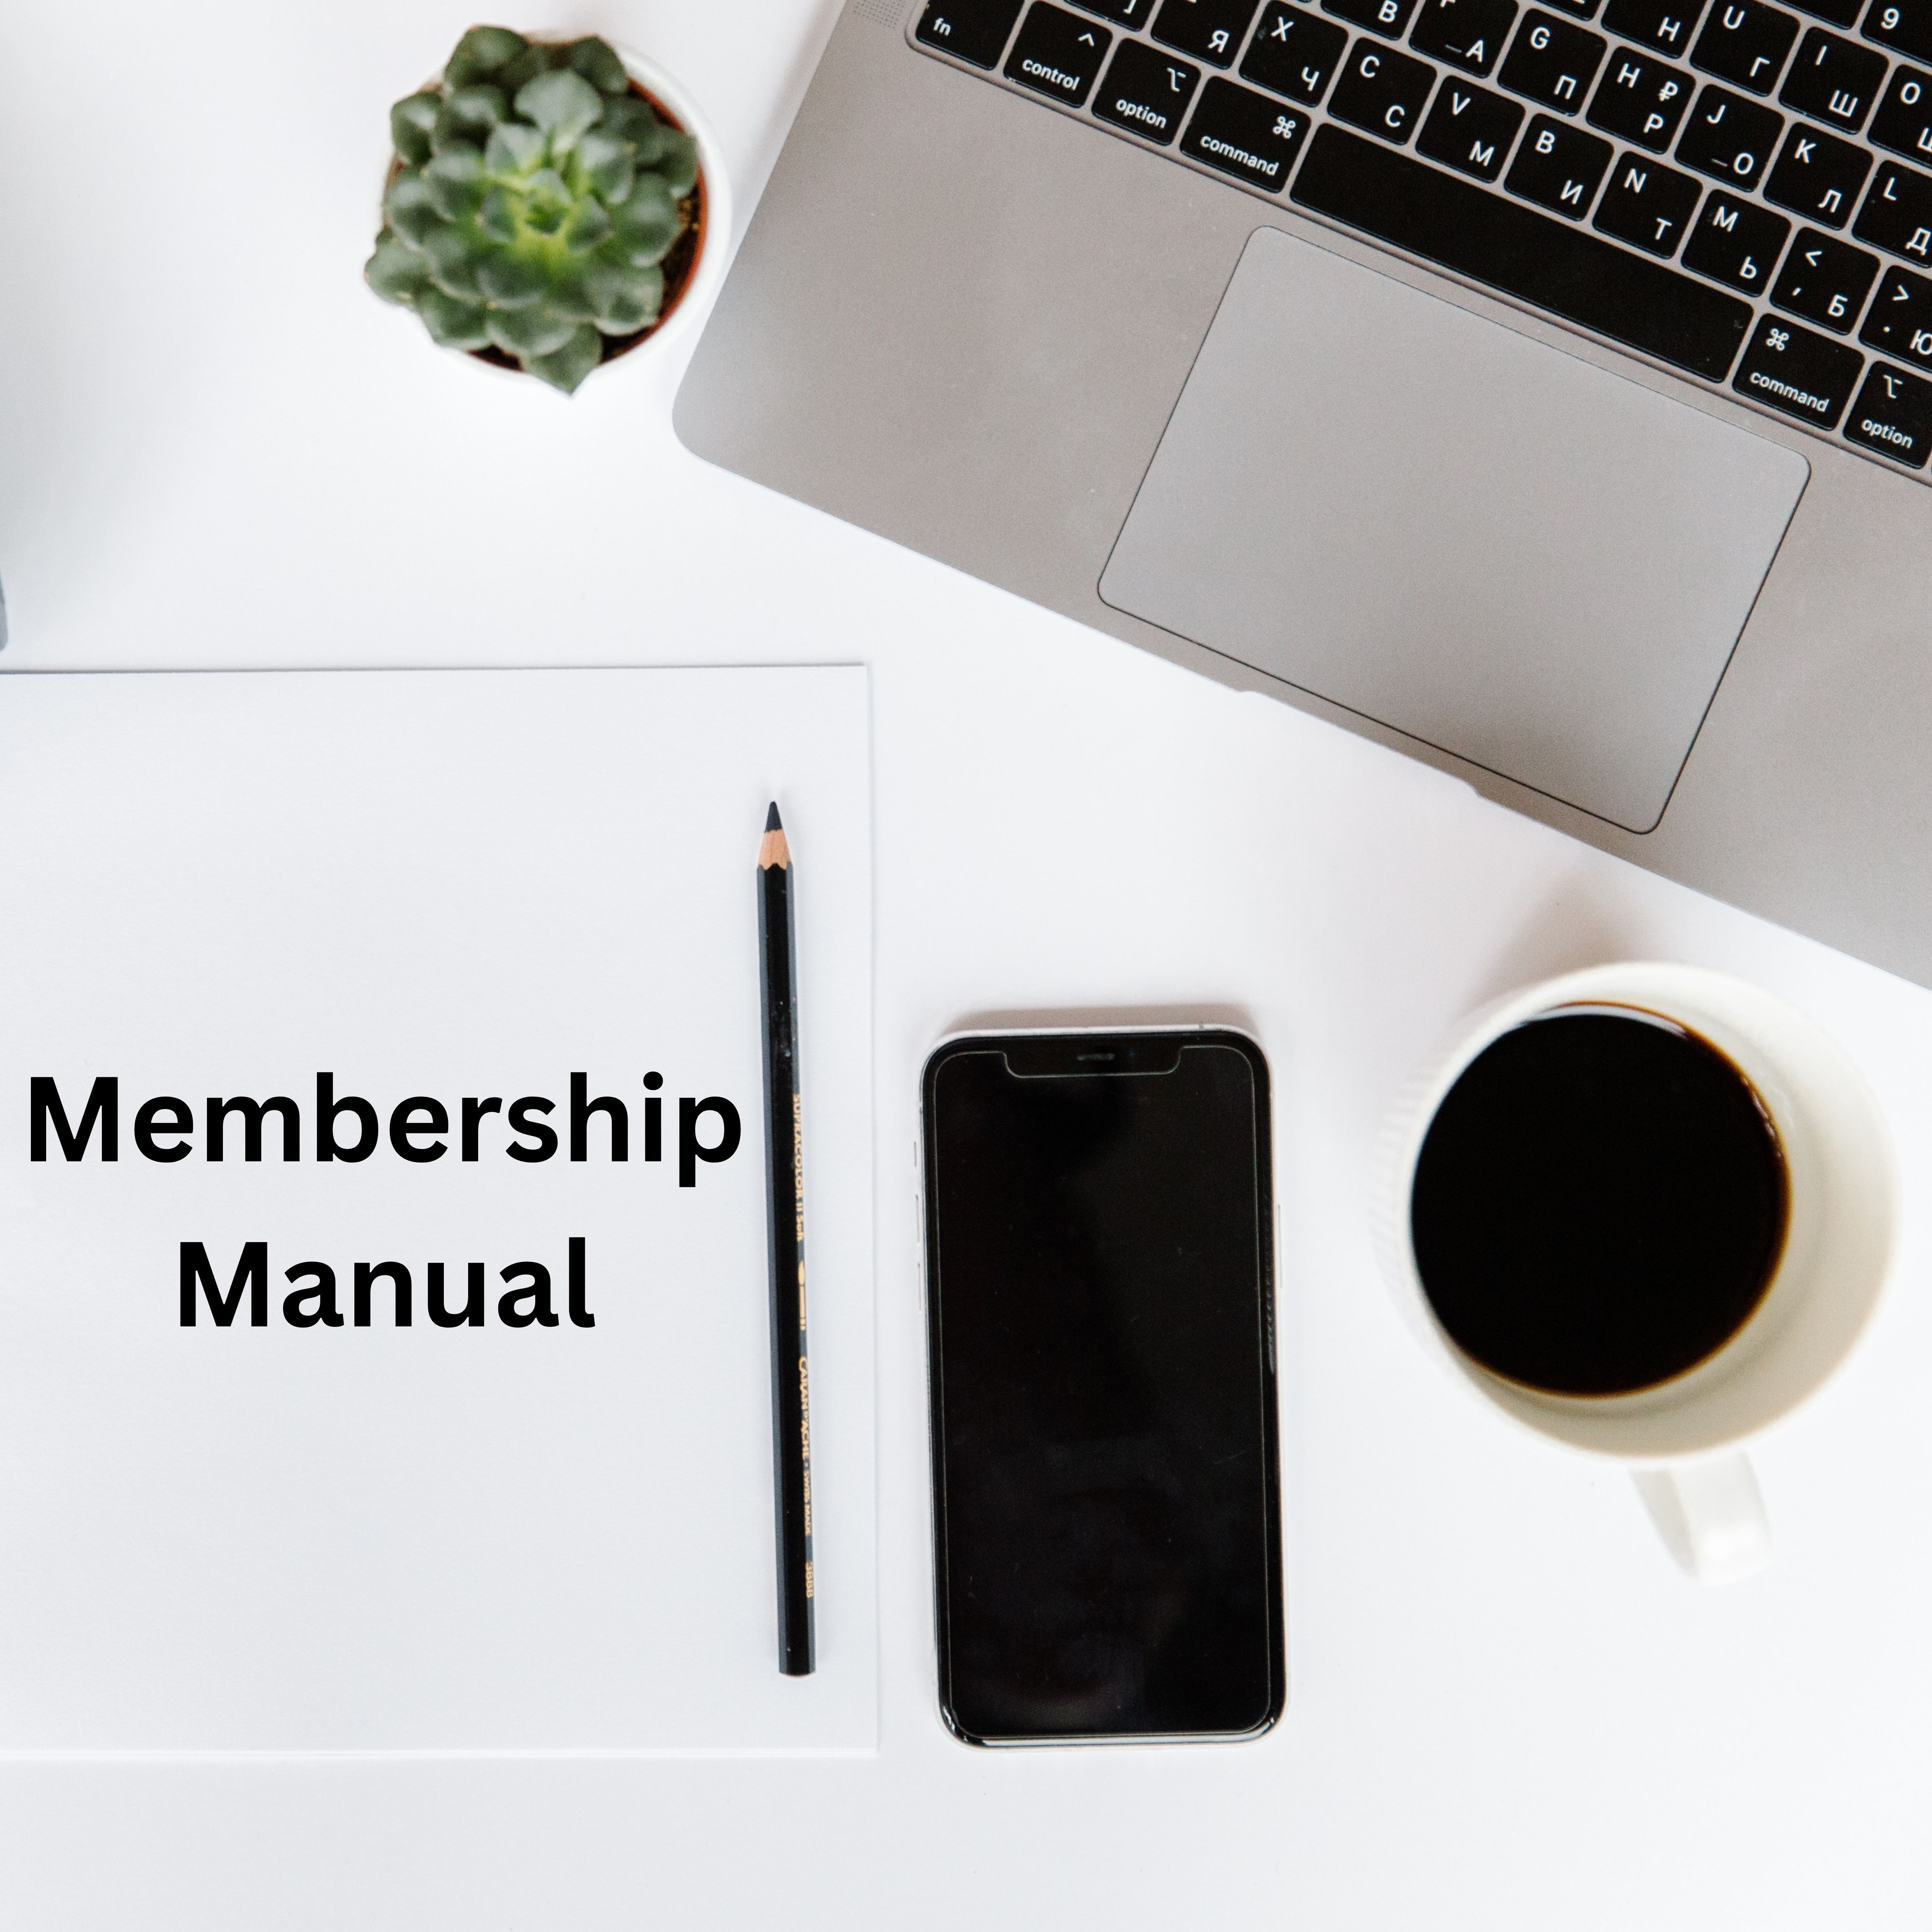 Membership Manual